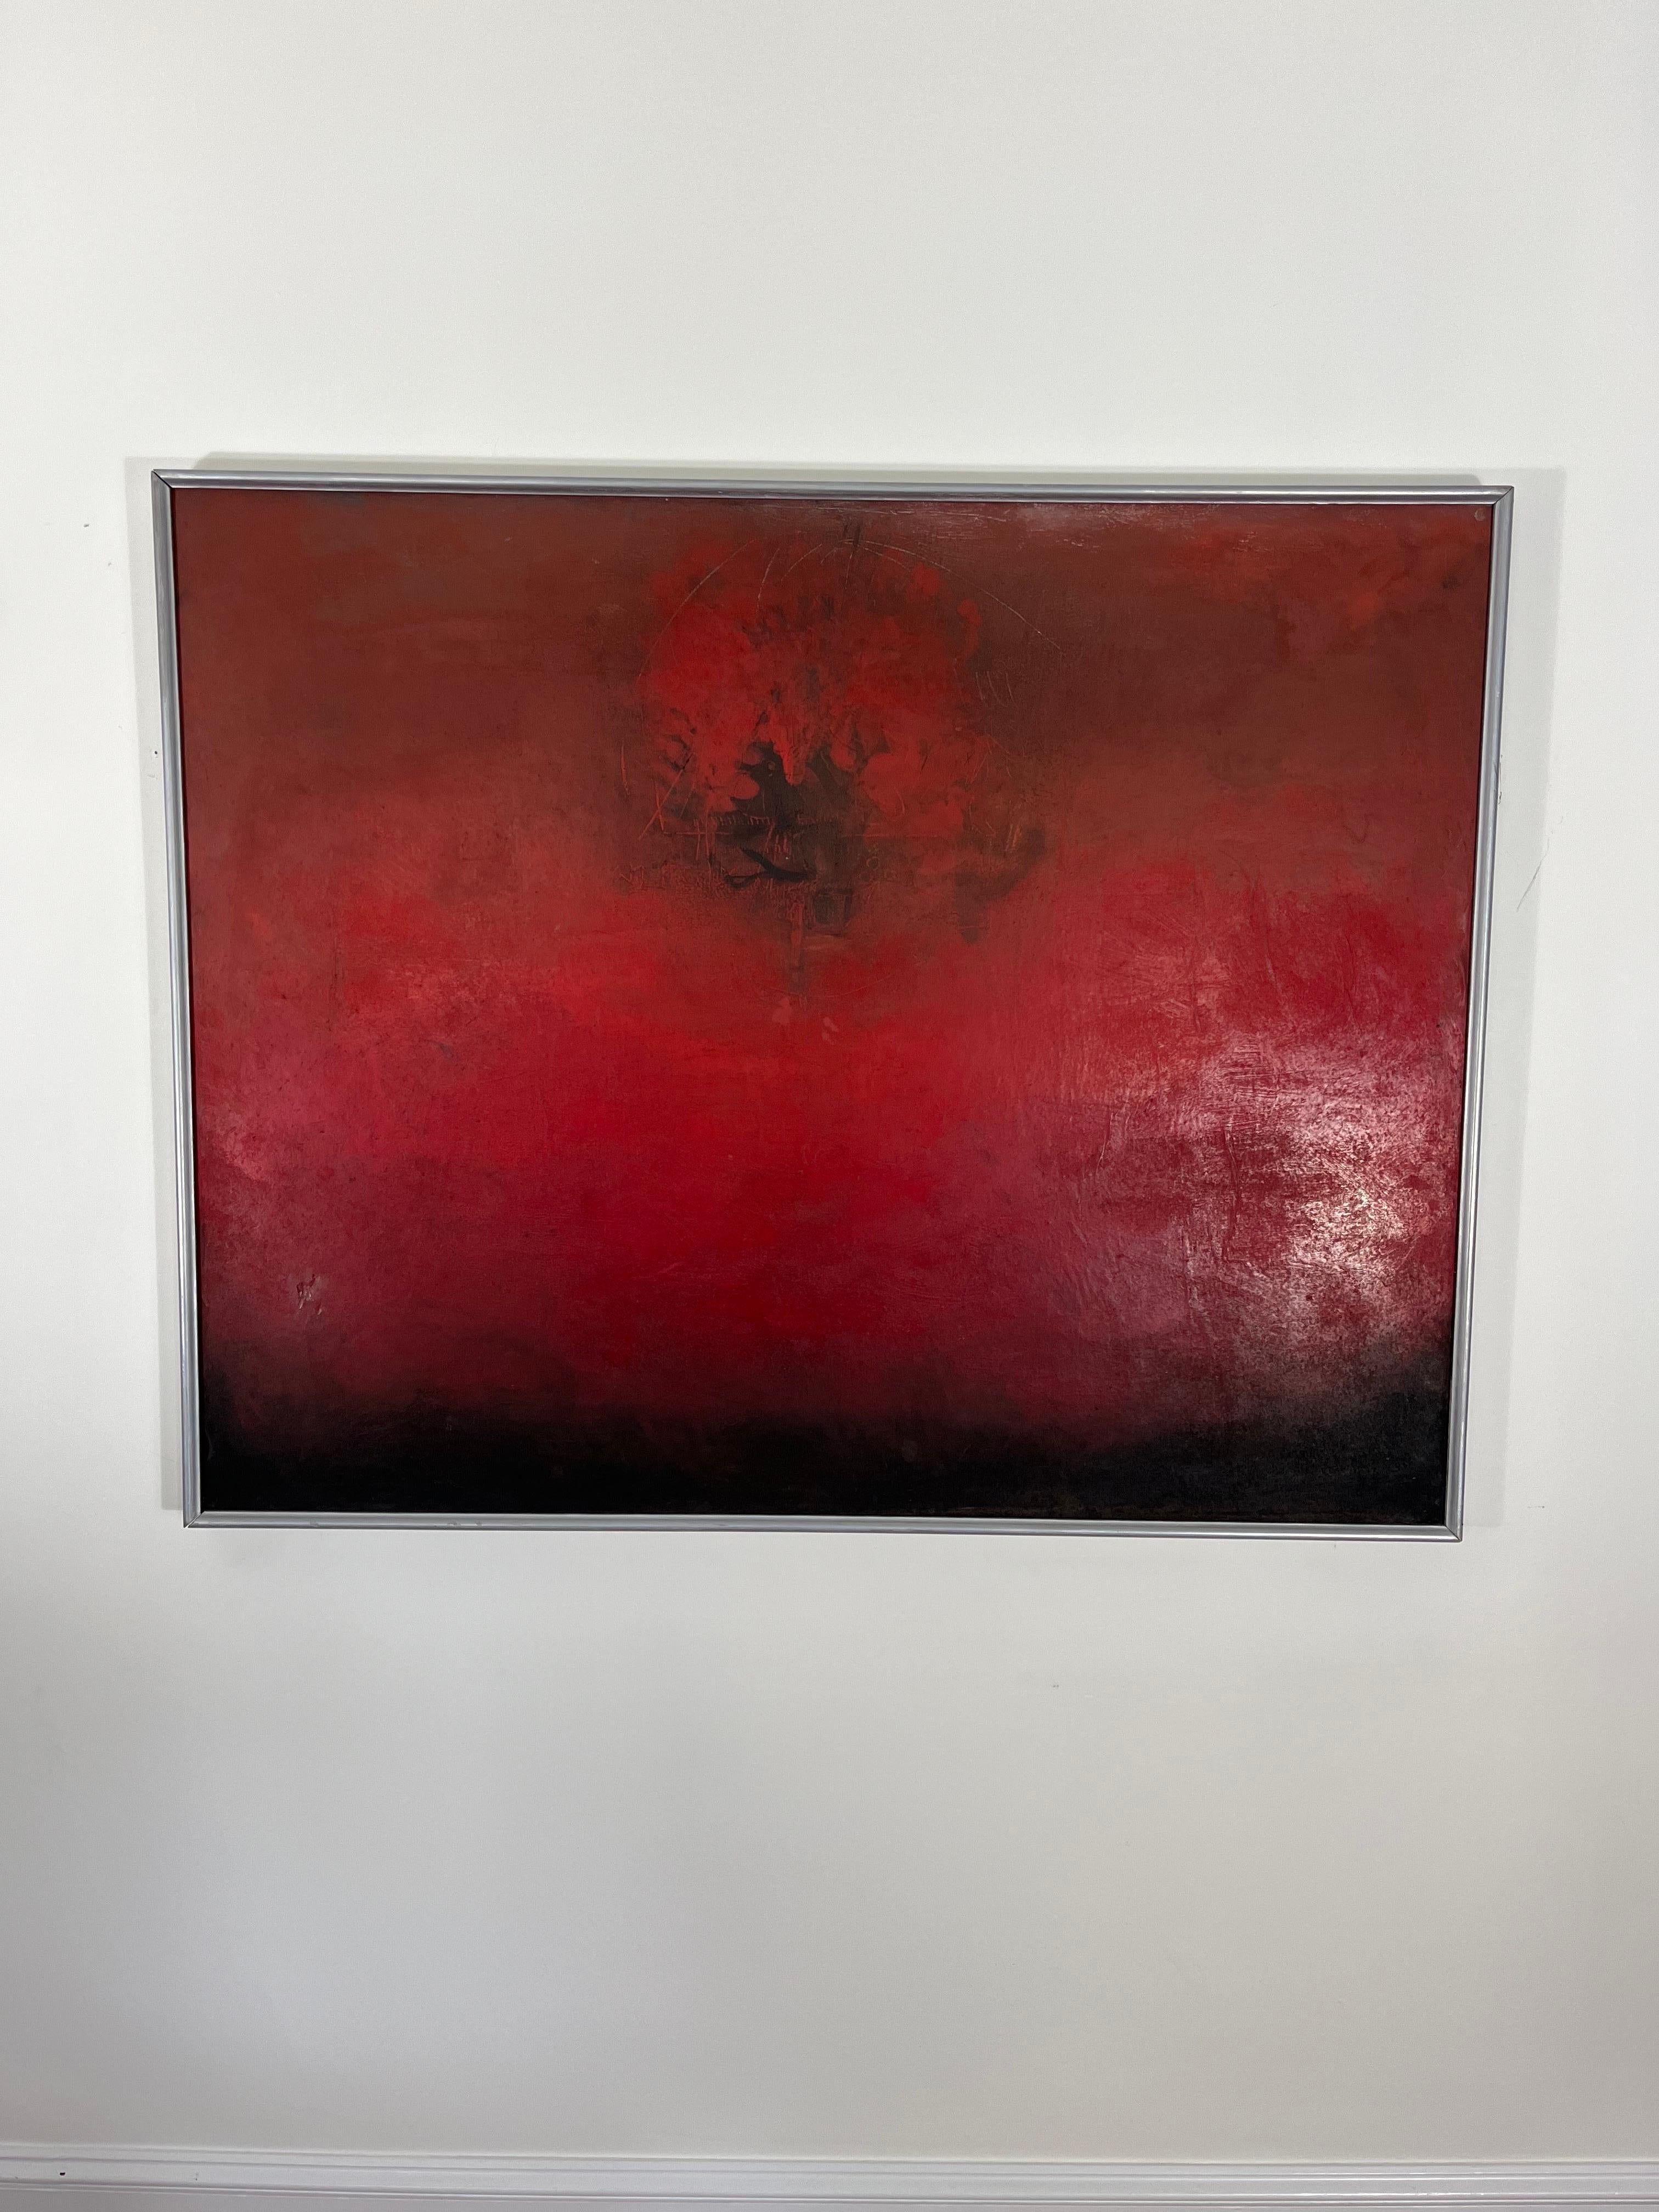 Peinture à l'huile sur toile et cadre en bois. Rouge profond avec des nuances de noir. Texture abstraite légère pour capter la lumière supplémentaire et créer de la profondeur. 
En bordure de route vers NYC/Philly $400